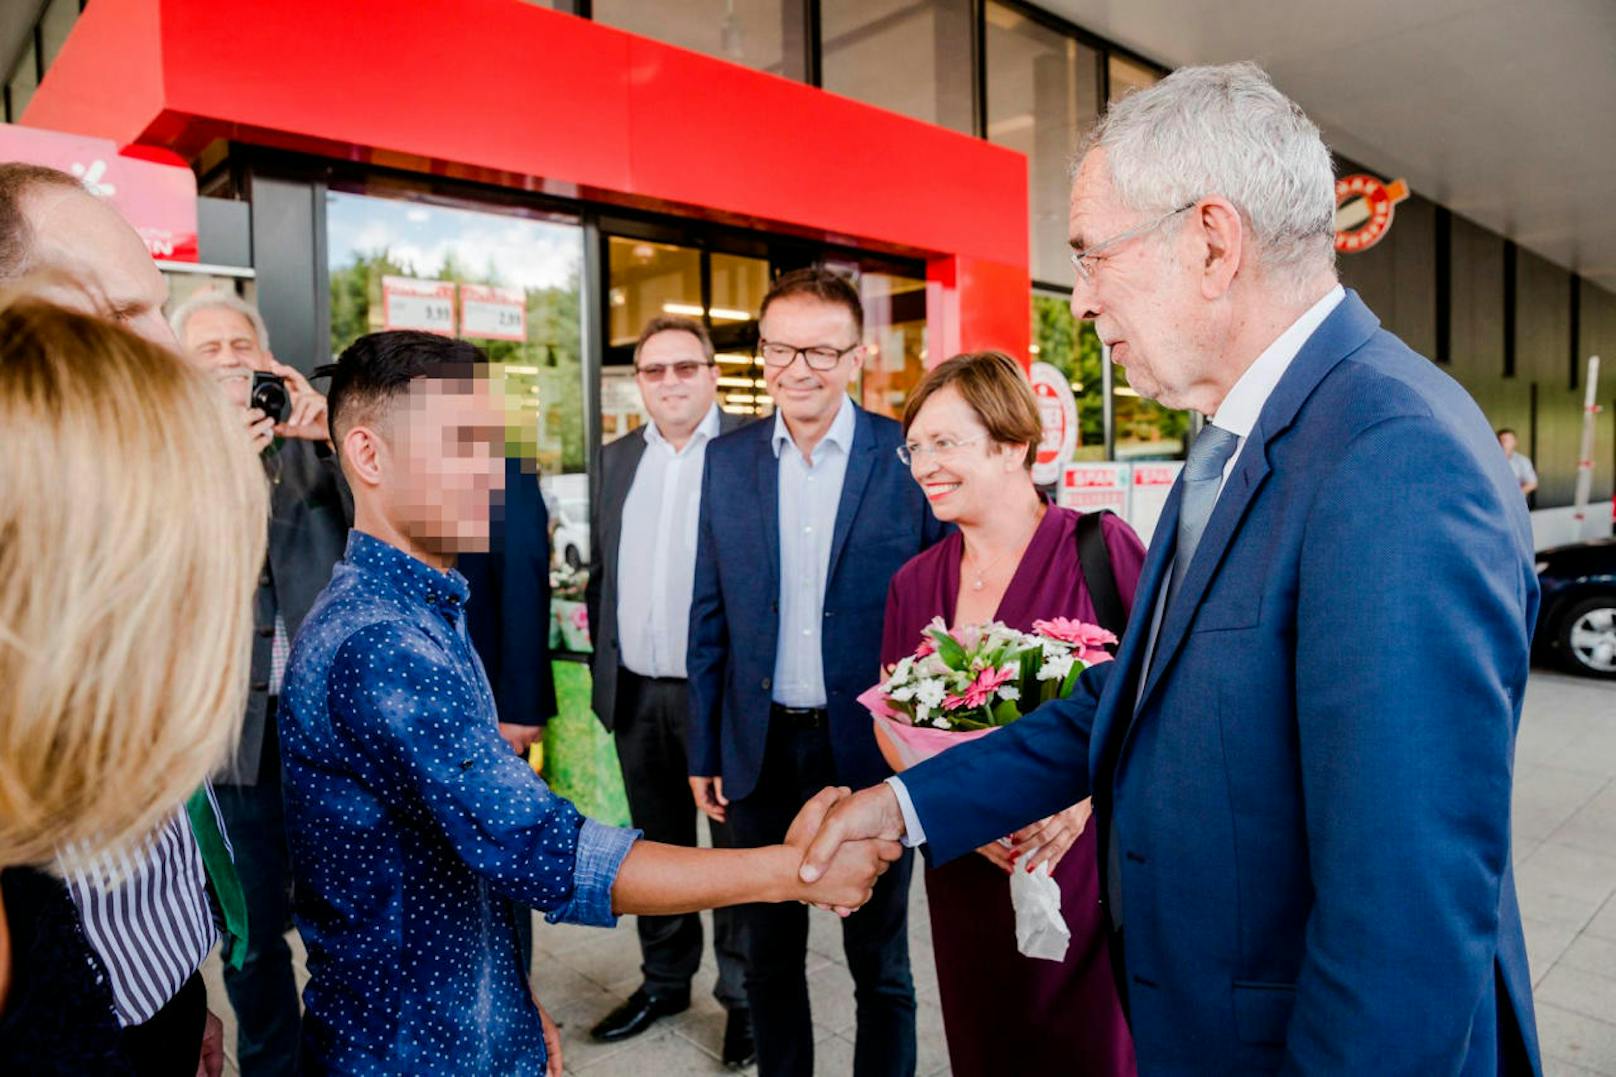 Bundespräsident Alexander Van der Bellen besuchte den von der Abschiebung bedrohten Musterlehrling am 14. August in einem Supermarkt in Neumarkt im Hausruckkreis, Oberösterreich.